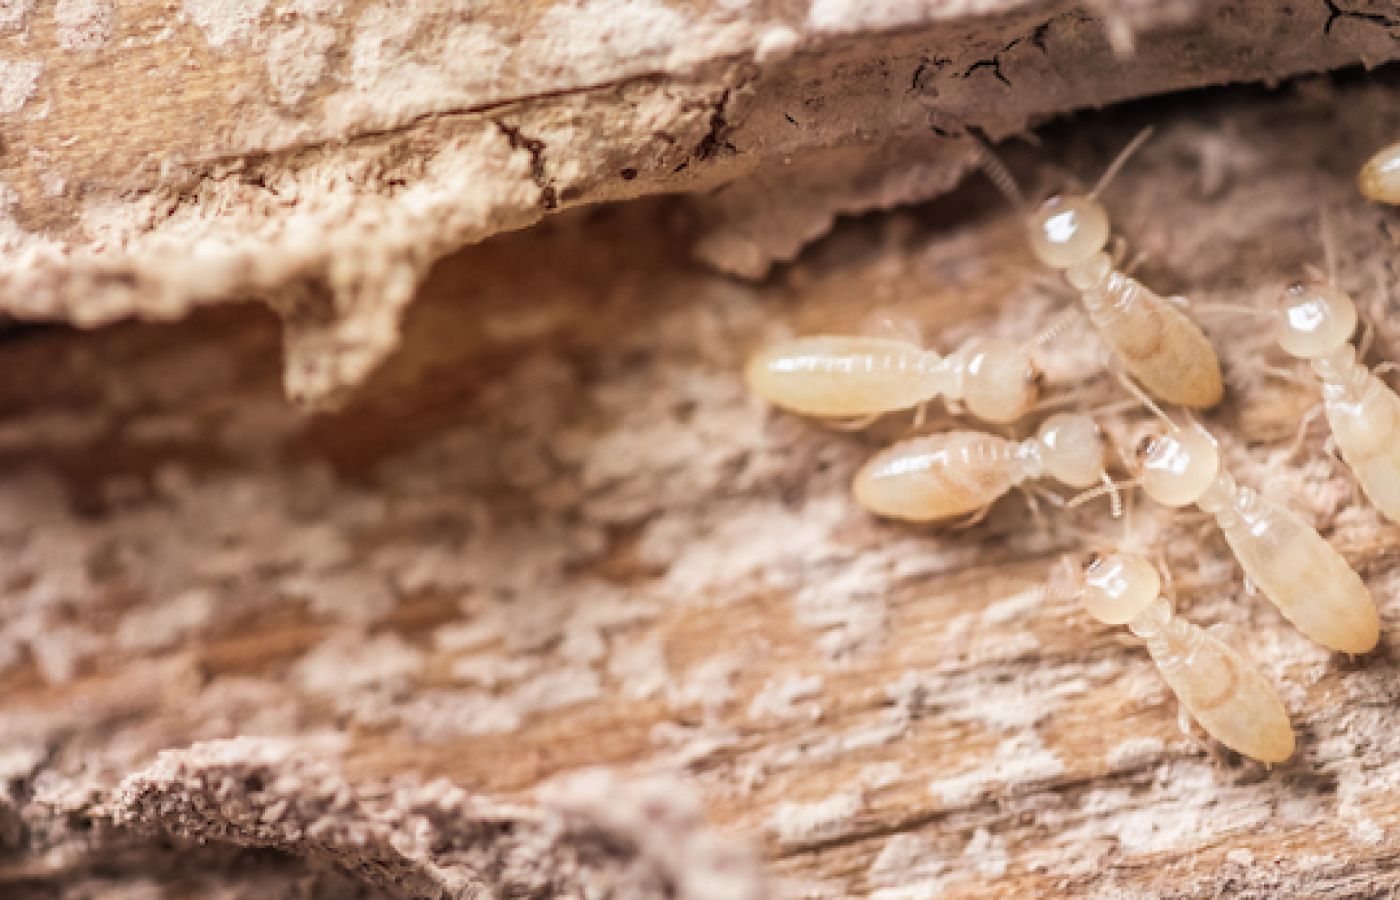 Worker termites look like white ants